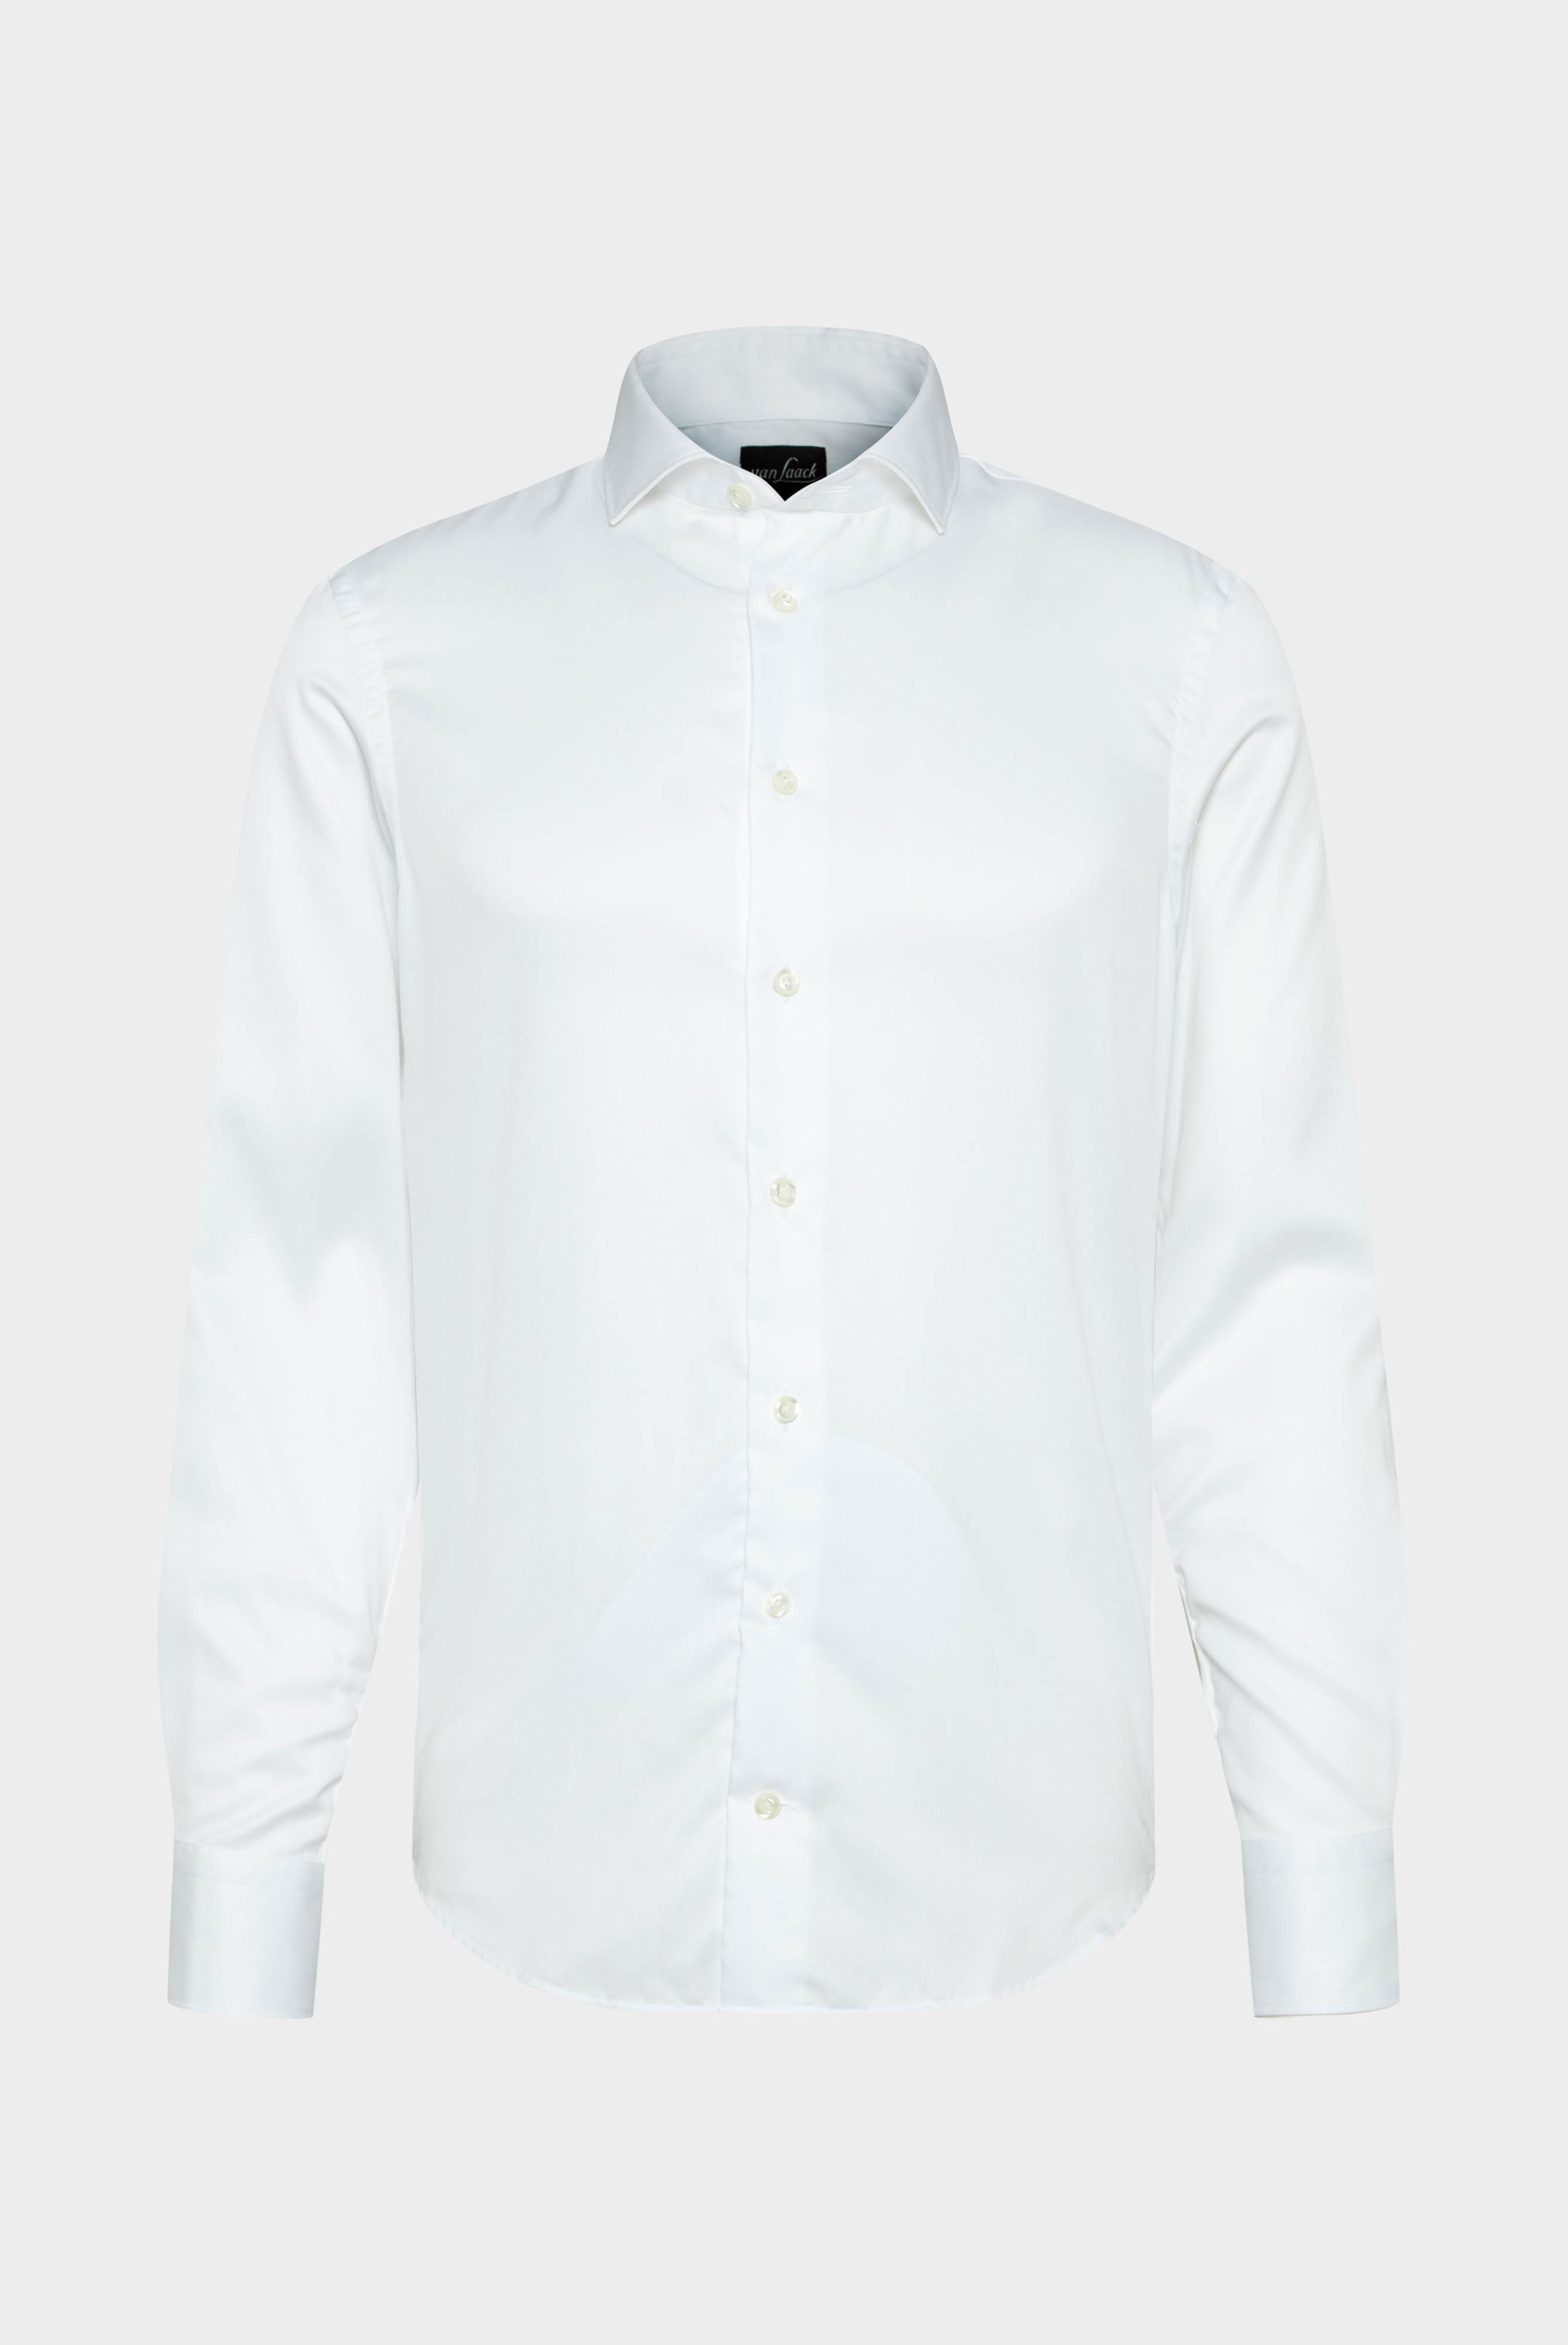 Bügelleichte Hemden+Bügelfreies Hybridshirt mit Jerseyeinsatz Slim Fit+20.2553.0F.132241.000.40